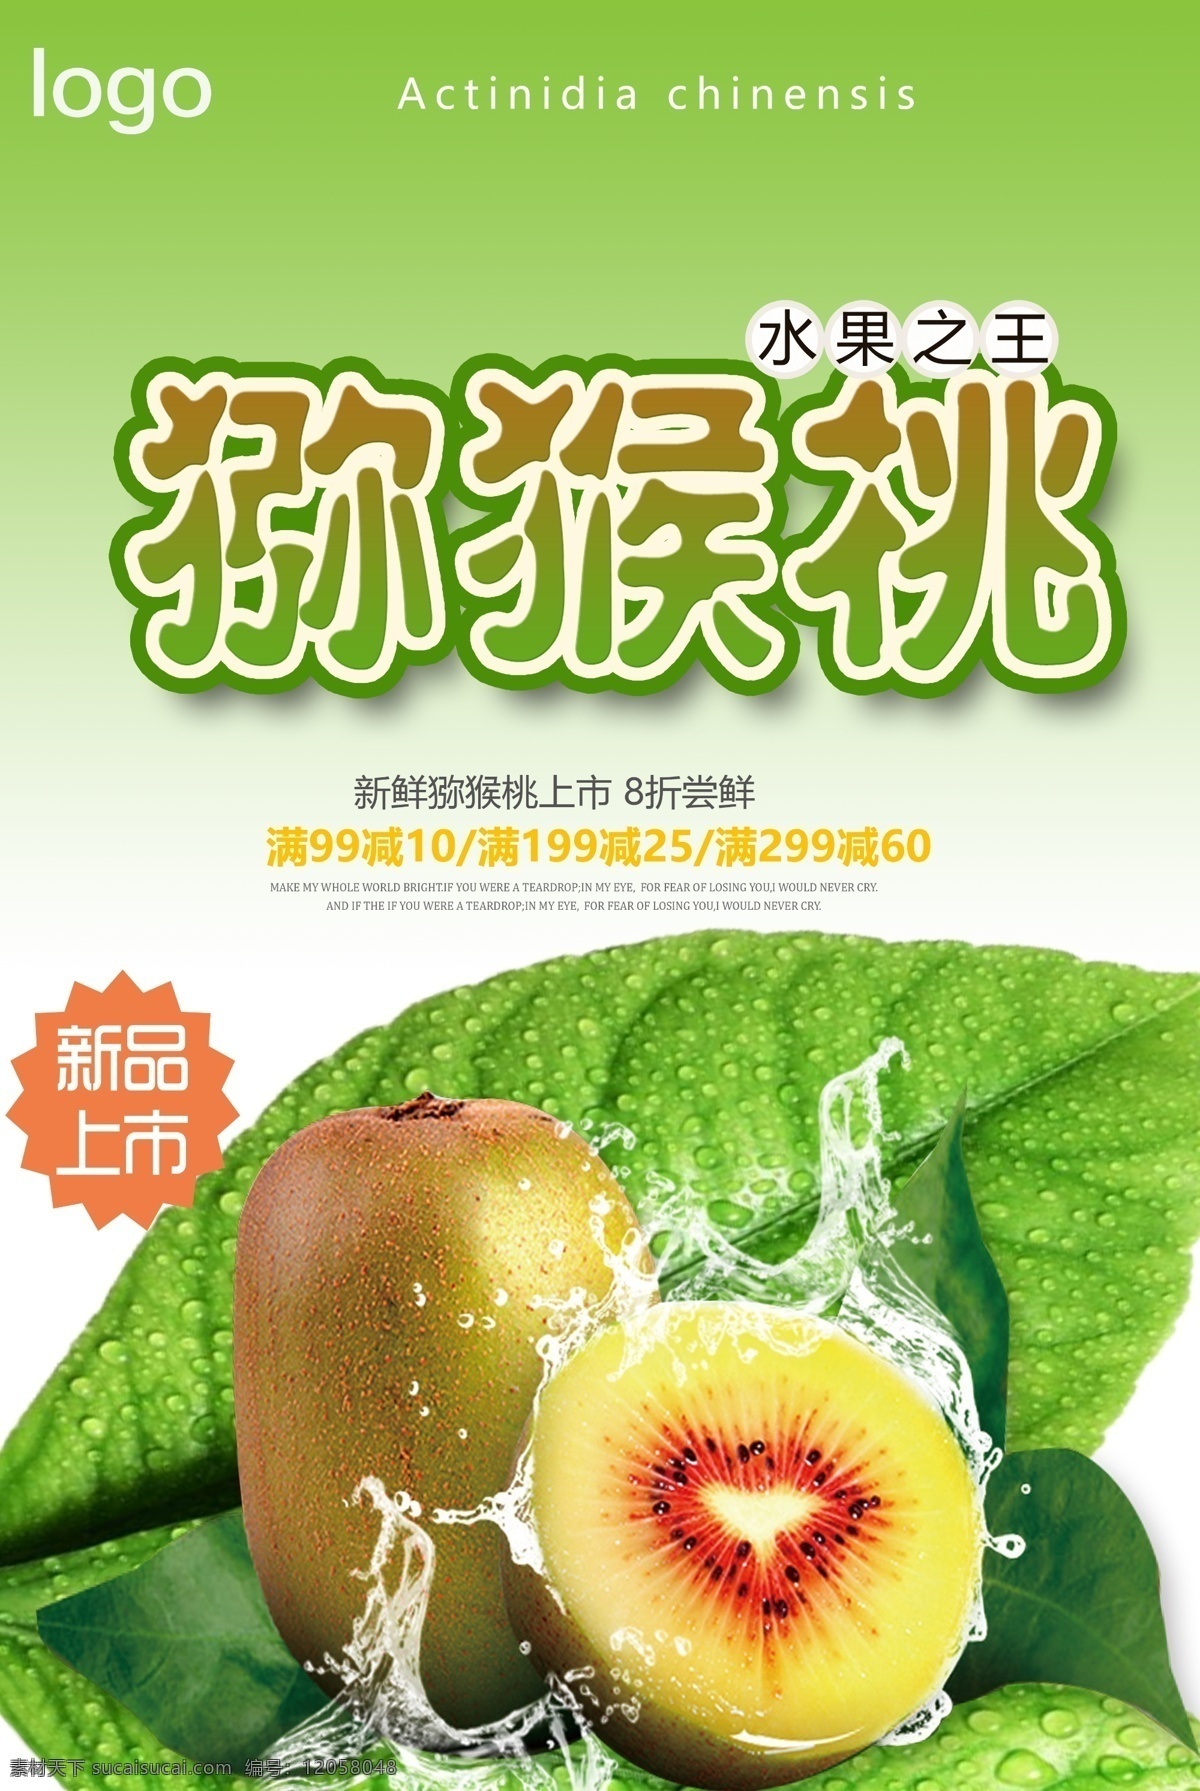 绿色 简约 大气 美味 猕猴桃 宣传海报 模版 苹果 主图 直通车 psd模板 水果 淘宝 天猫感兴趣 免费模版